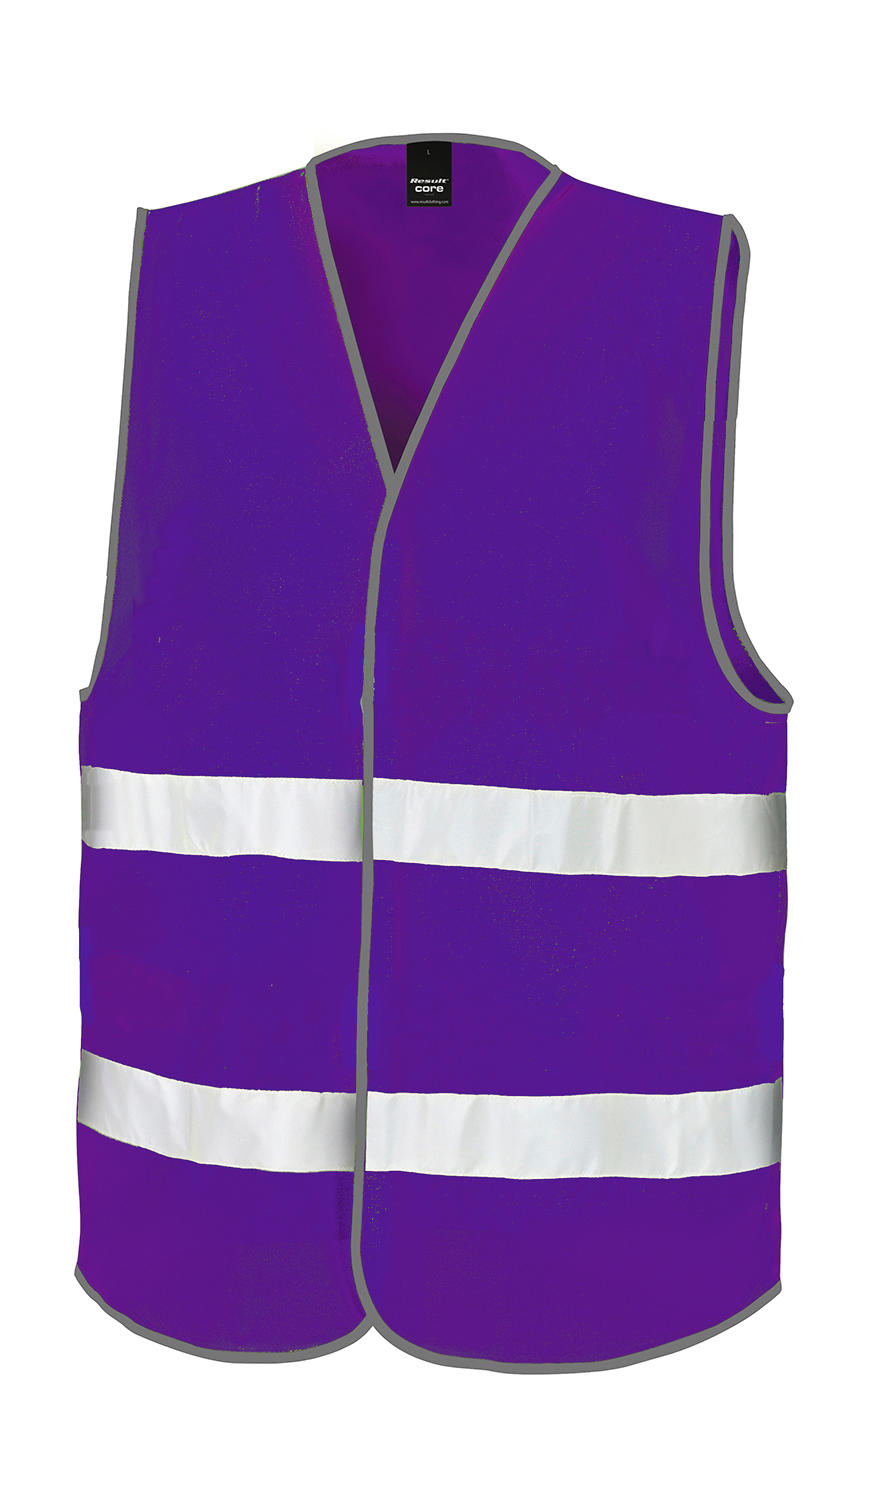 Core Enhanced Visibility Vest - purple